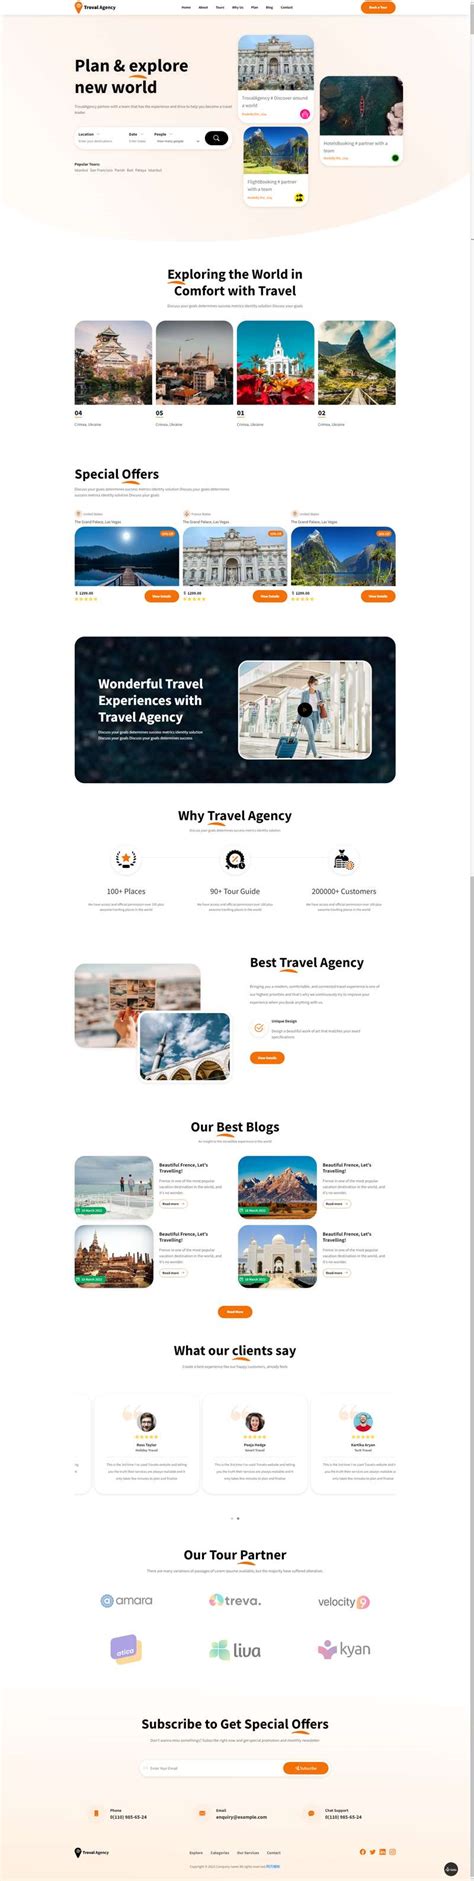 旅行社网站设计布局设计html，旅游预约系统网站网页设计模板_墨鱼部落格